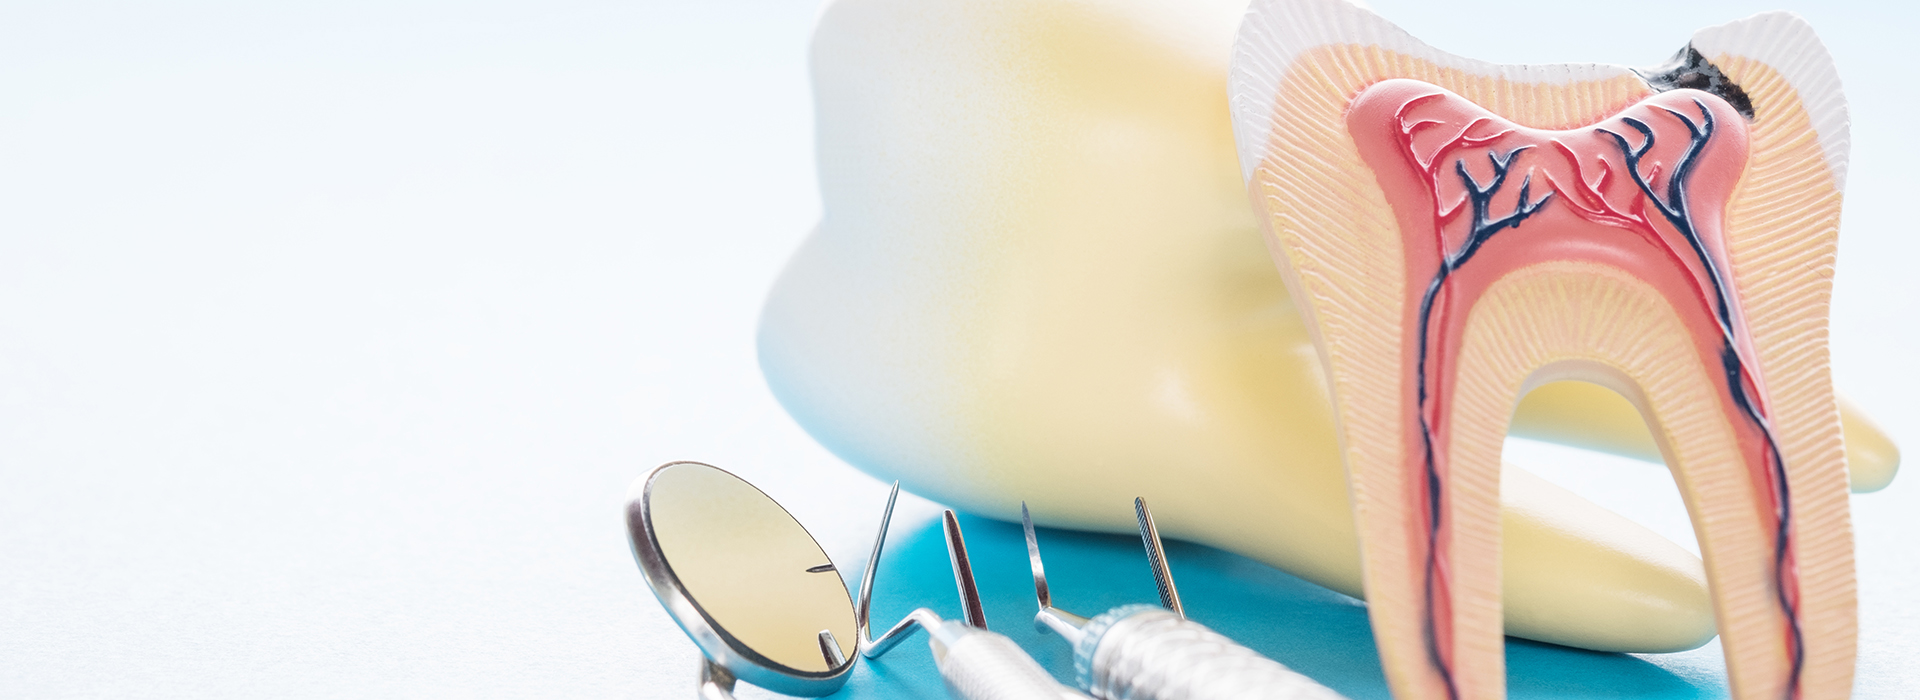 Napa Dental | Dental Fillings, Veneers and Teeth Whitening